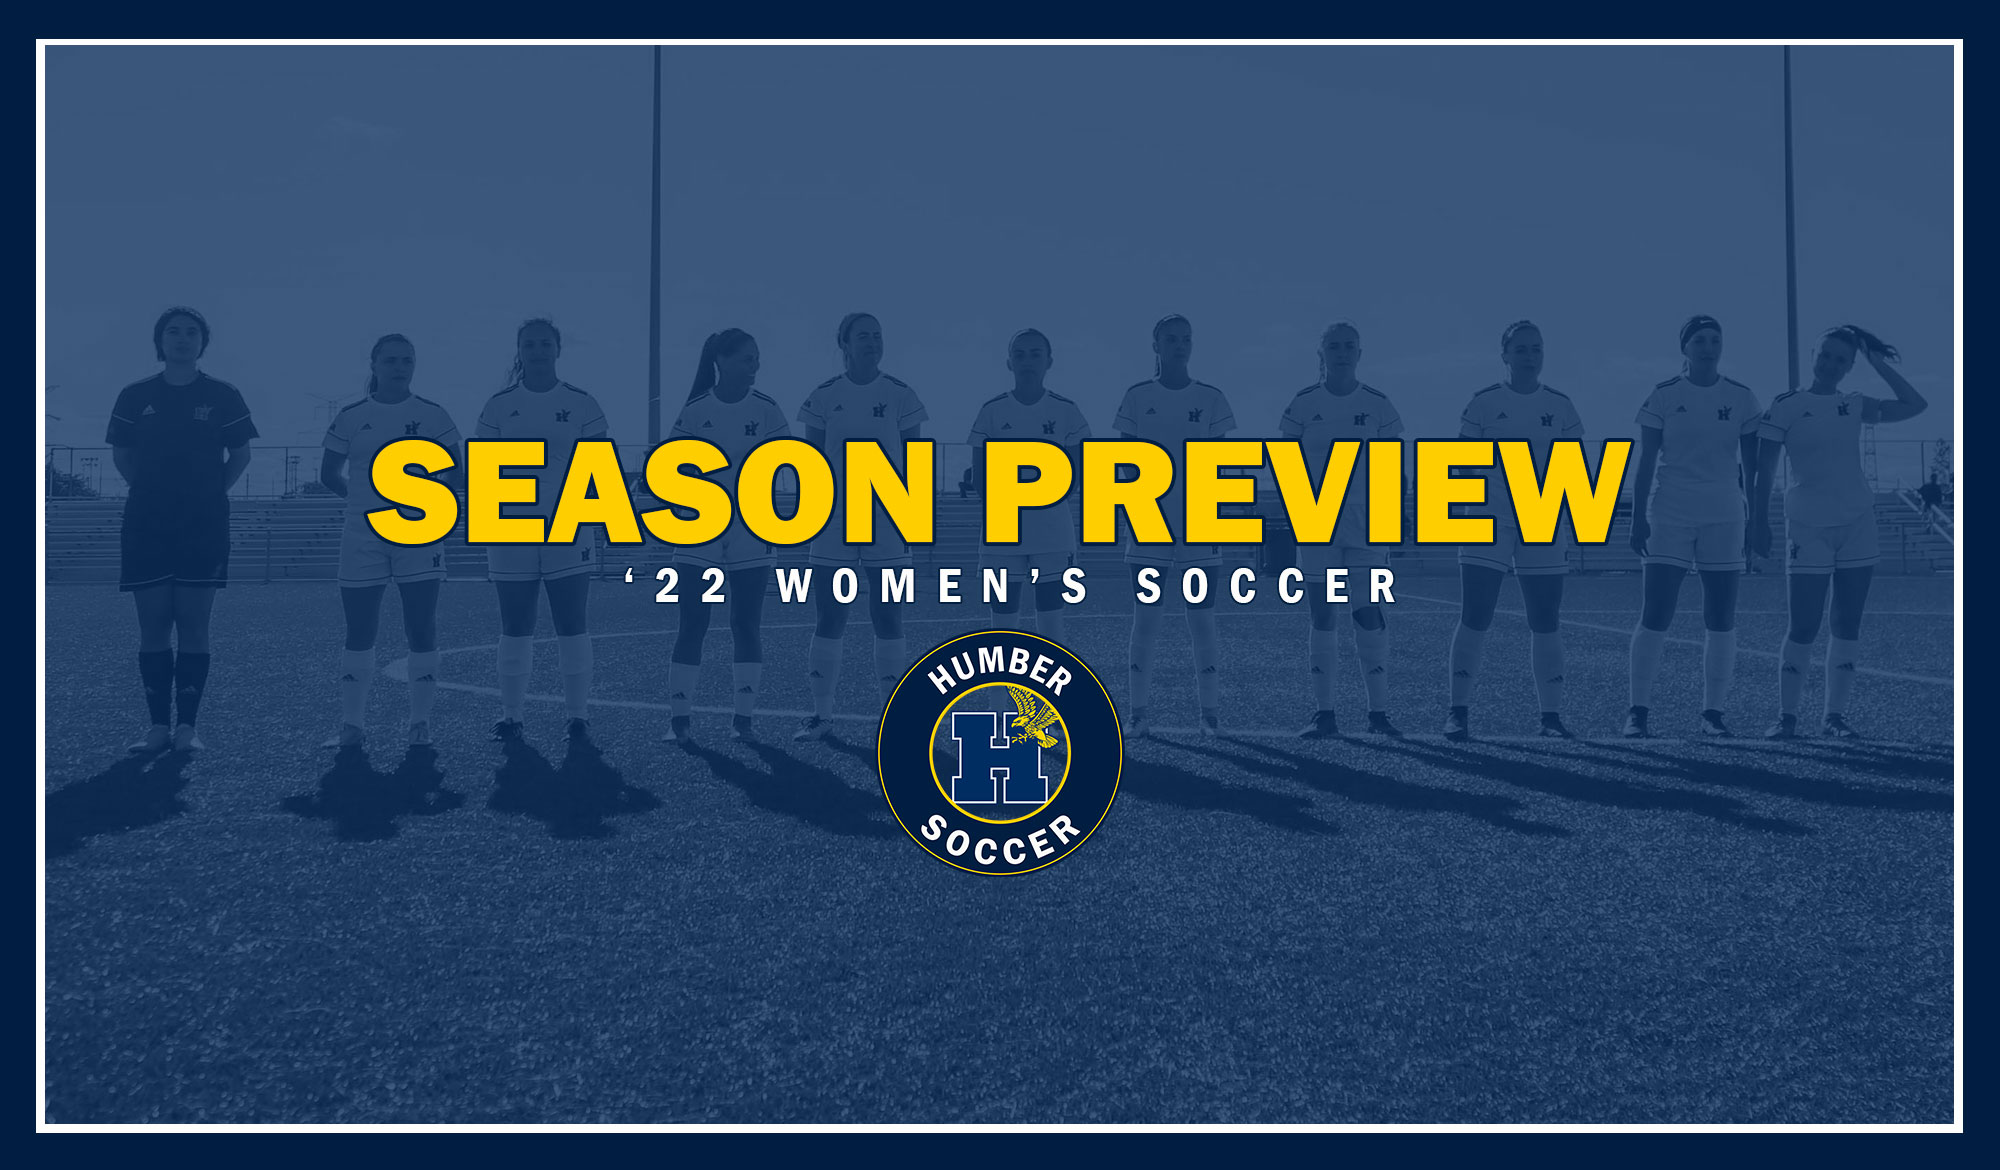 Season Preview - women's soccer